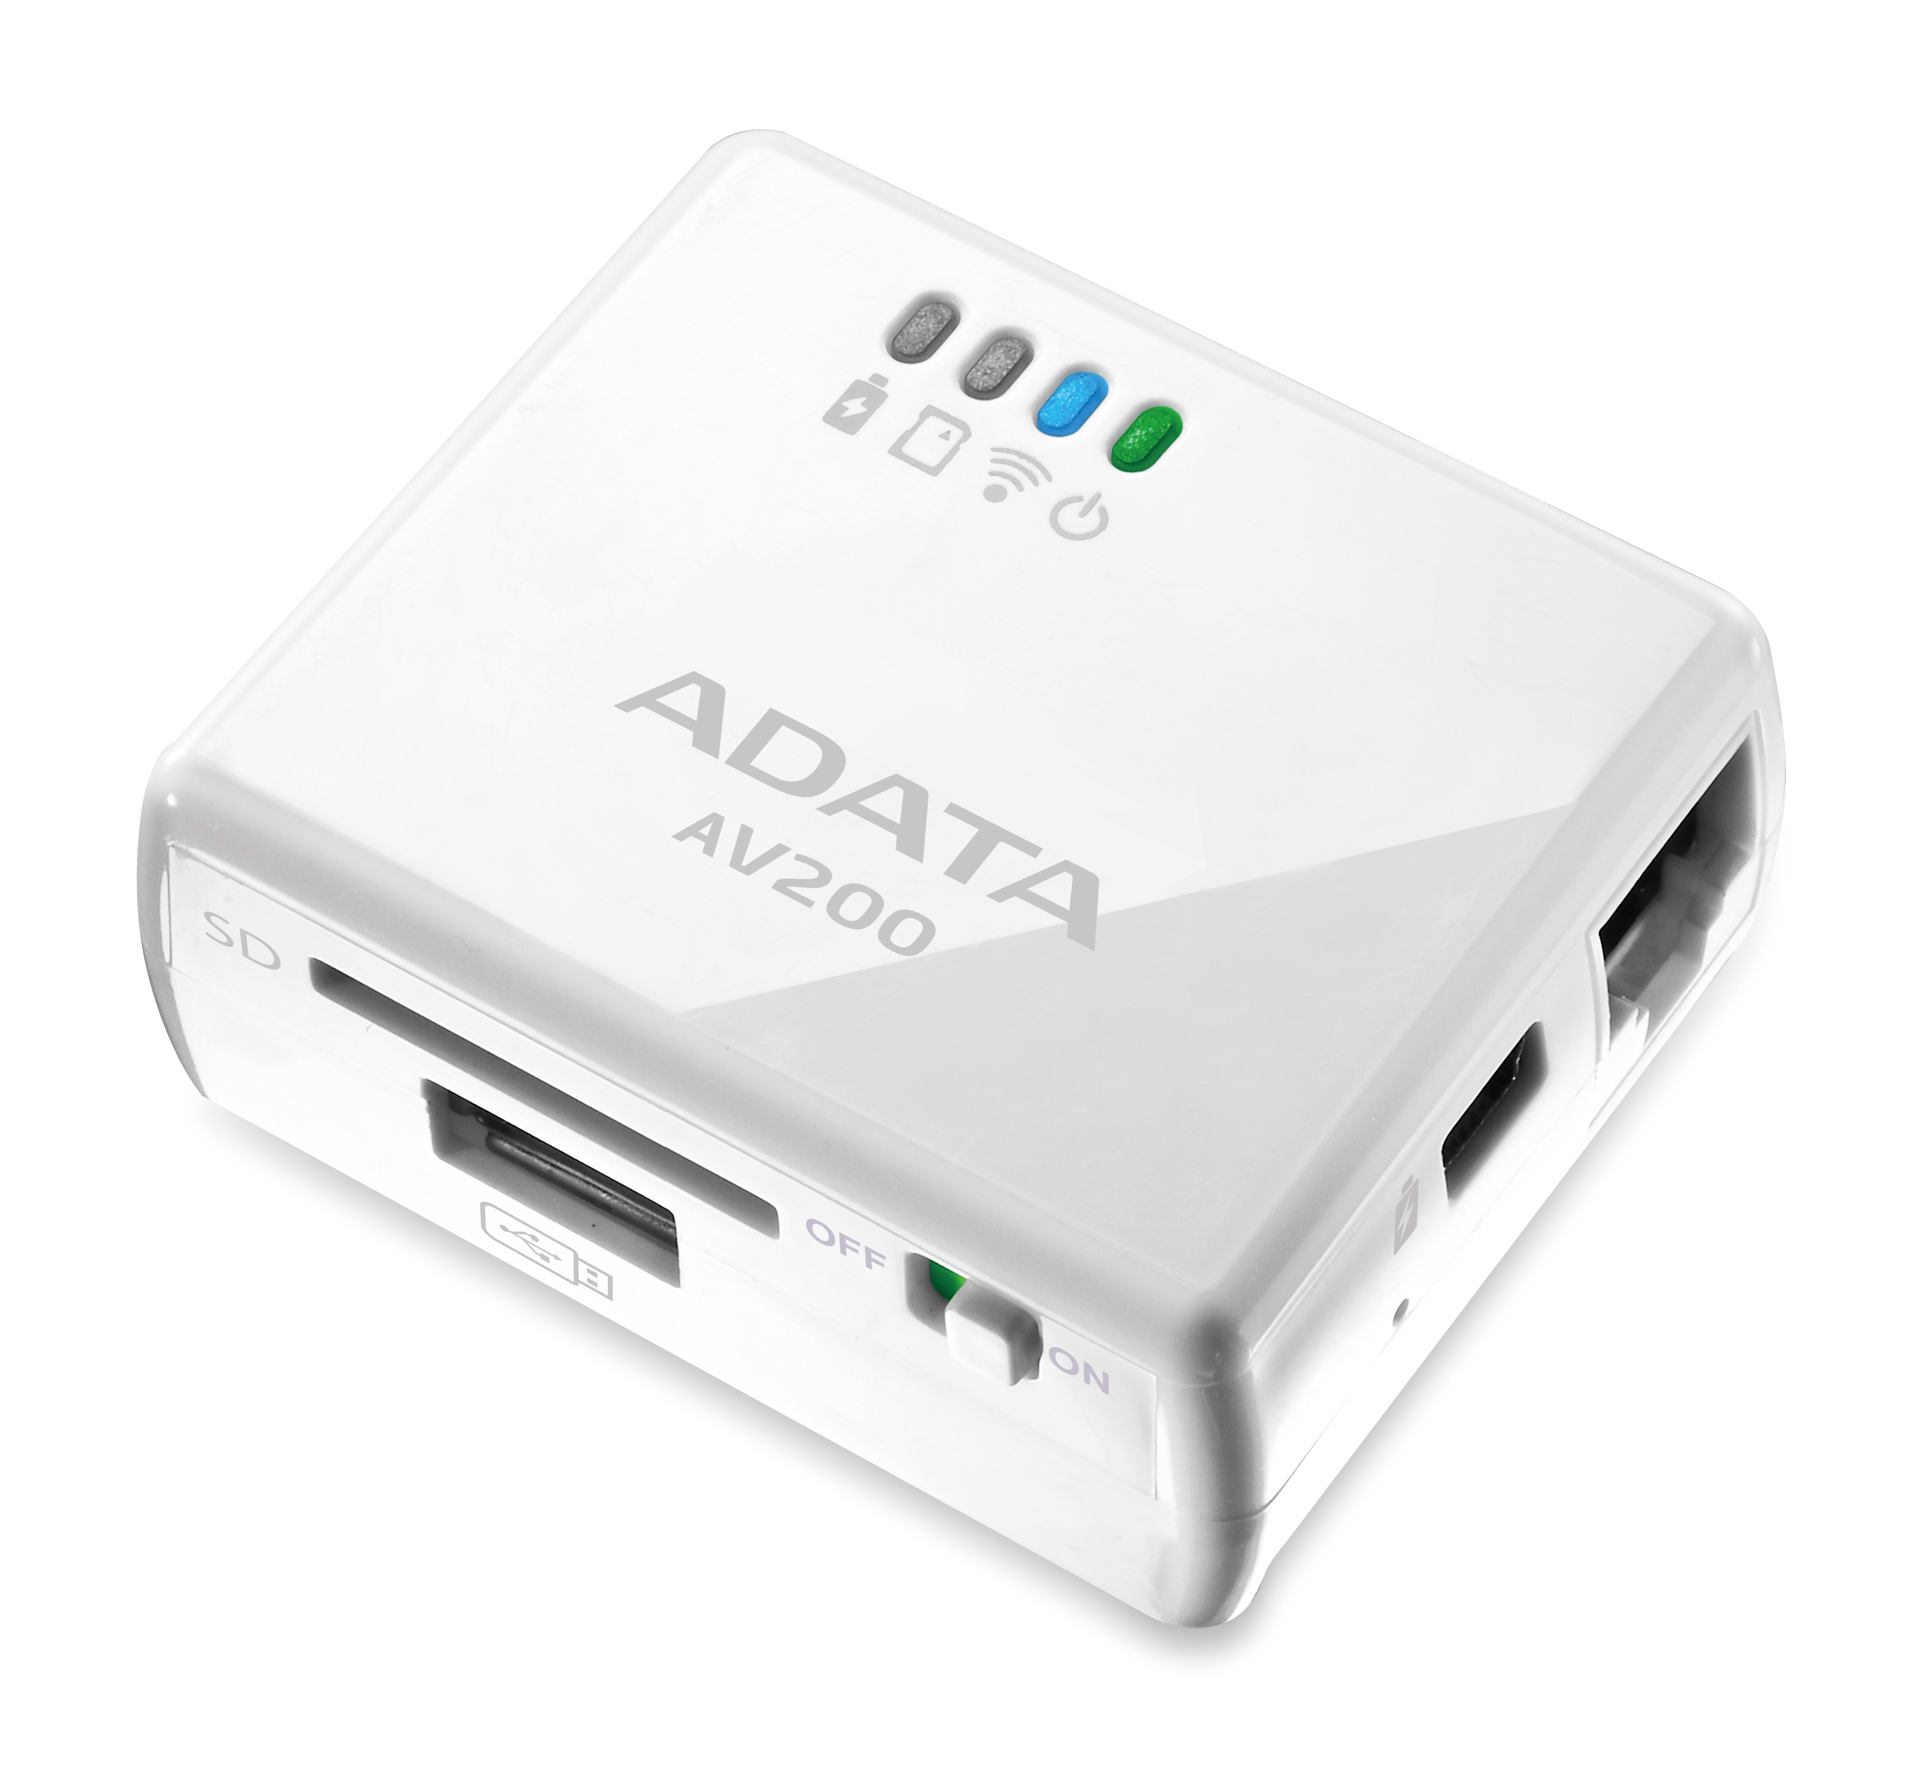 Immagine pubblicata in relazione al seguente contenuto: ADATA lancia l'access point wireless portatile DashDrive Air AV200 | Nome immagine: news18190_DashDrive-Air-AV200_1.jpg